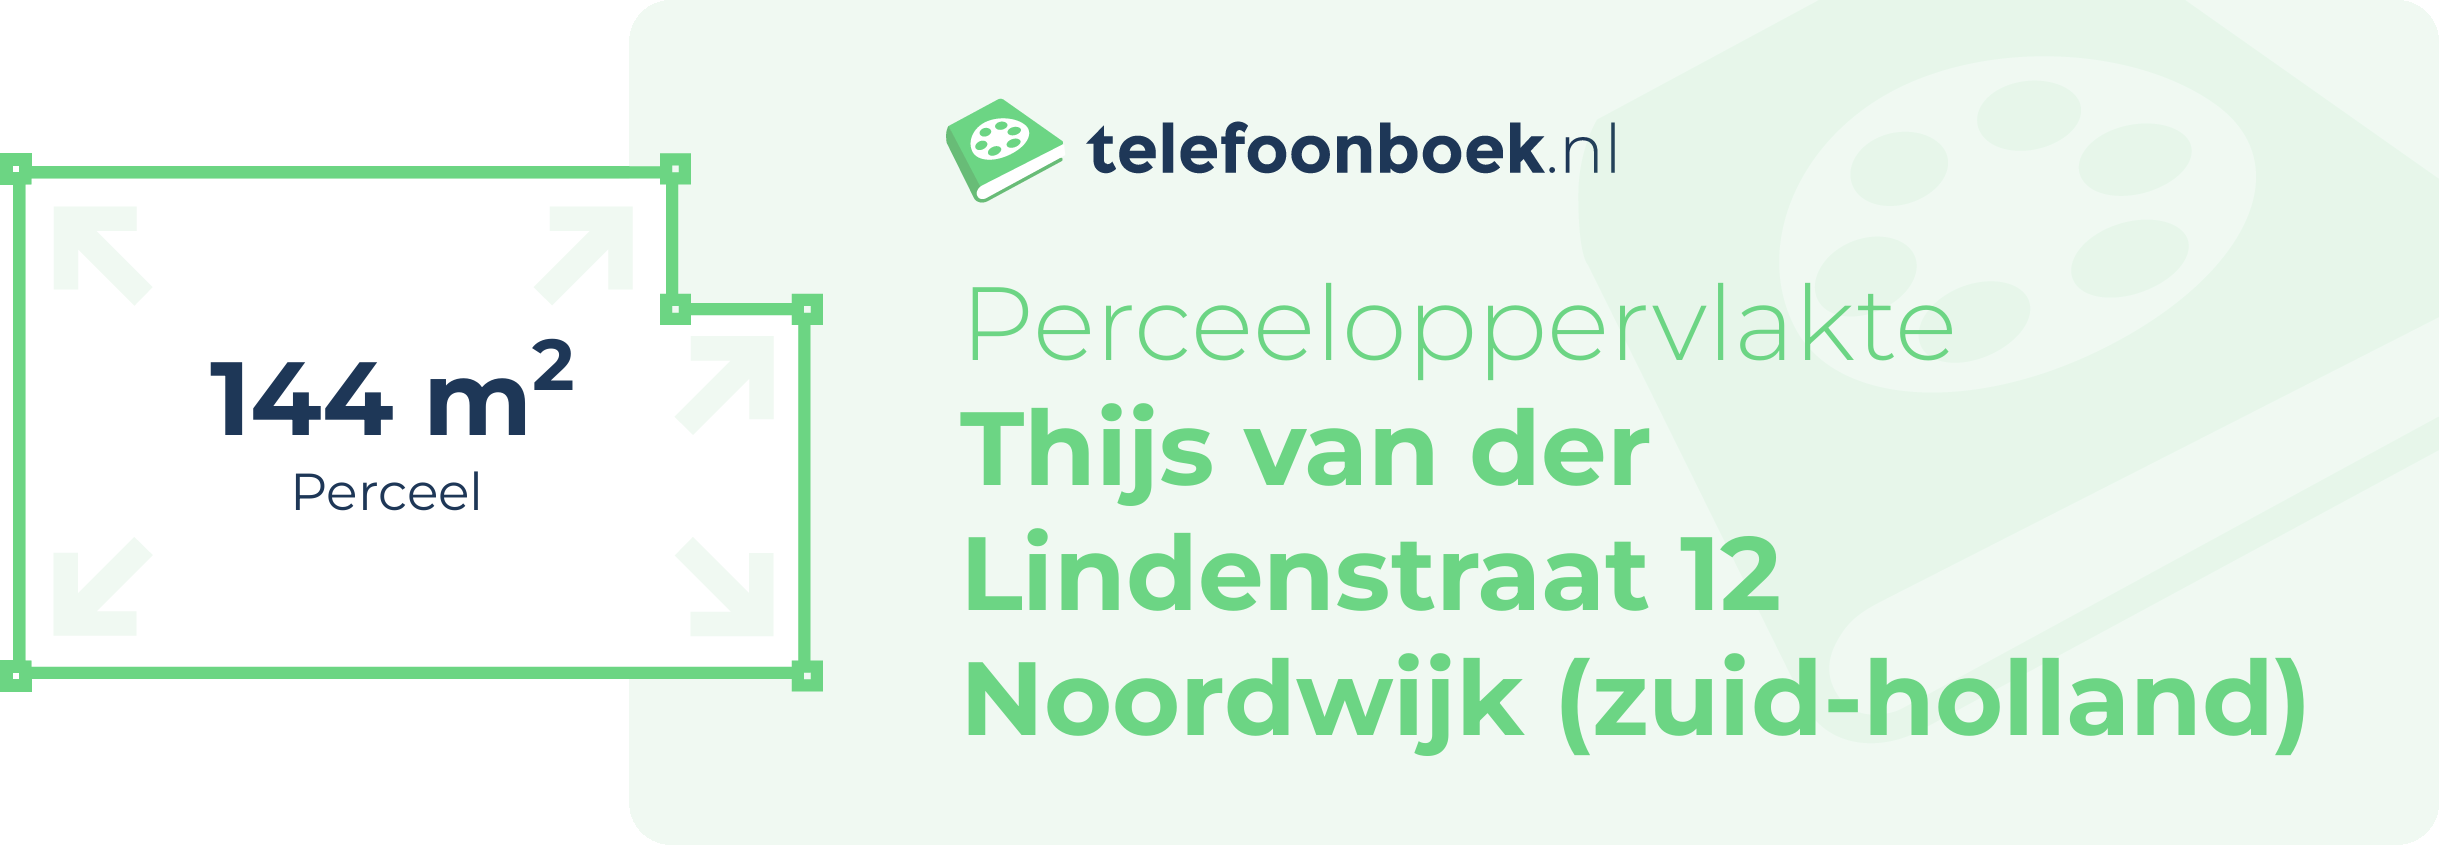 Perceeloppervlakte Thijs Van Der Lindenstraat 12 Noordwijk (Zuid-Holland)